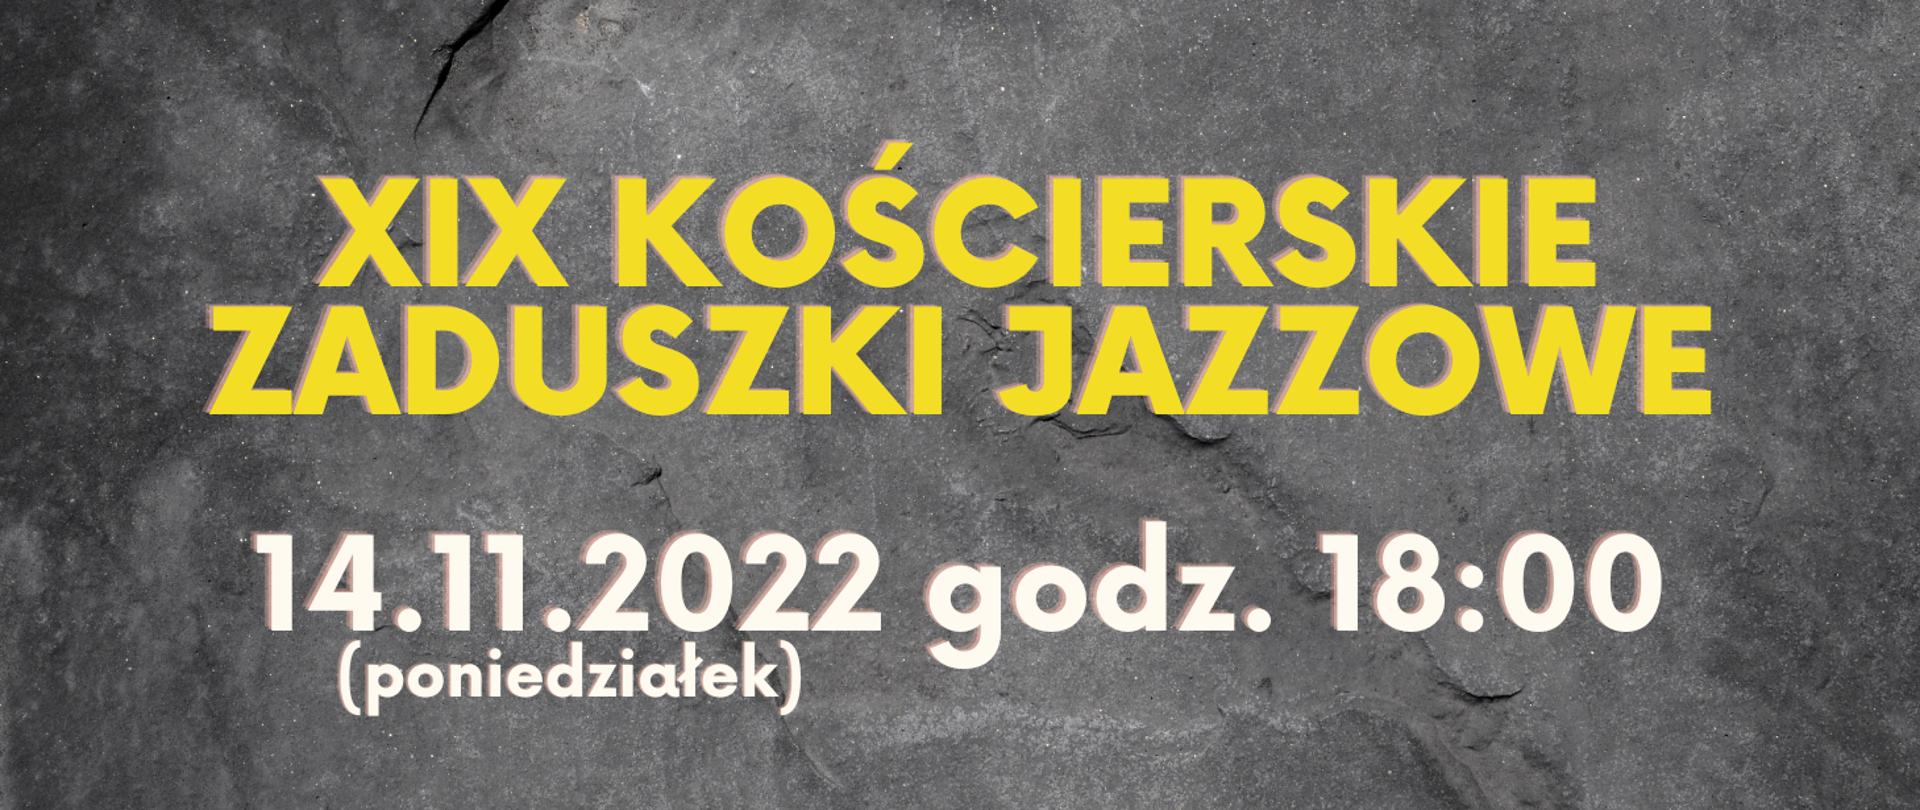 Na szarym tle w górnej części obrazka żółty napis: "XIX Kościerskie Zaduszki Jazzowe", poniżej biały napis: "14.11.2022 godz. 18:00 (poniedziałek)"